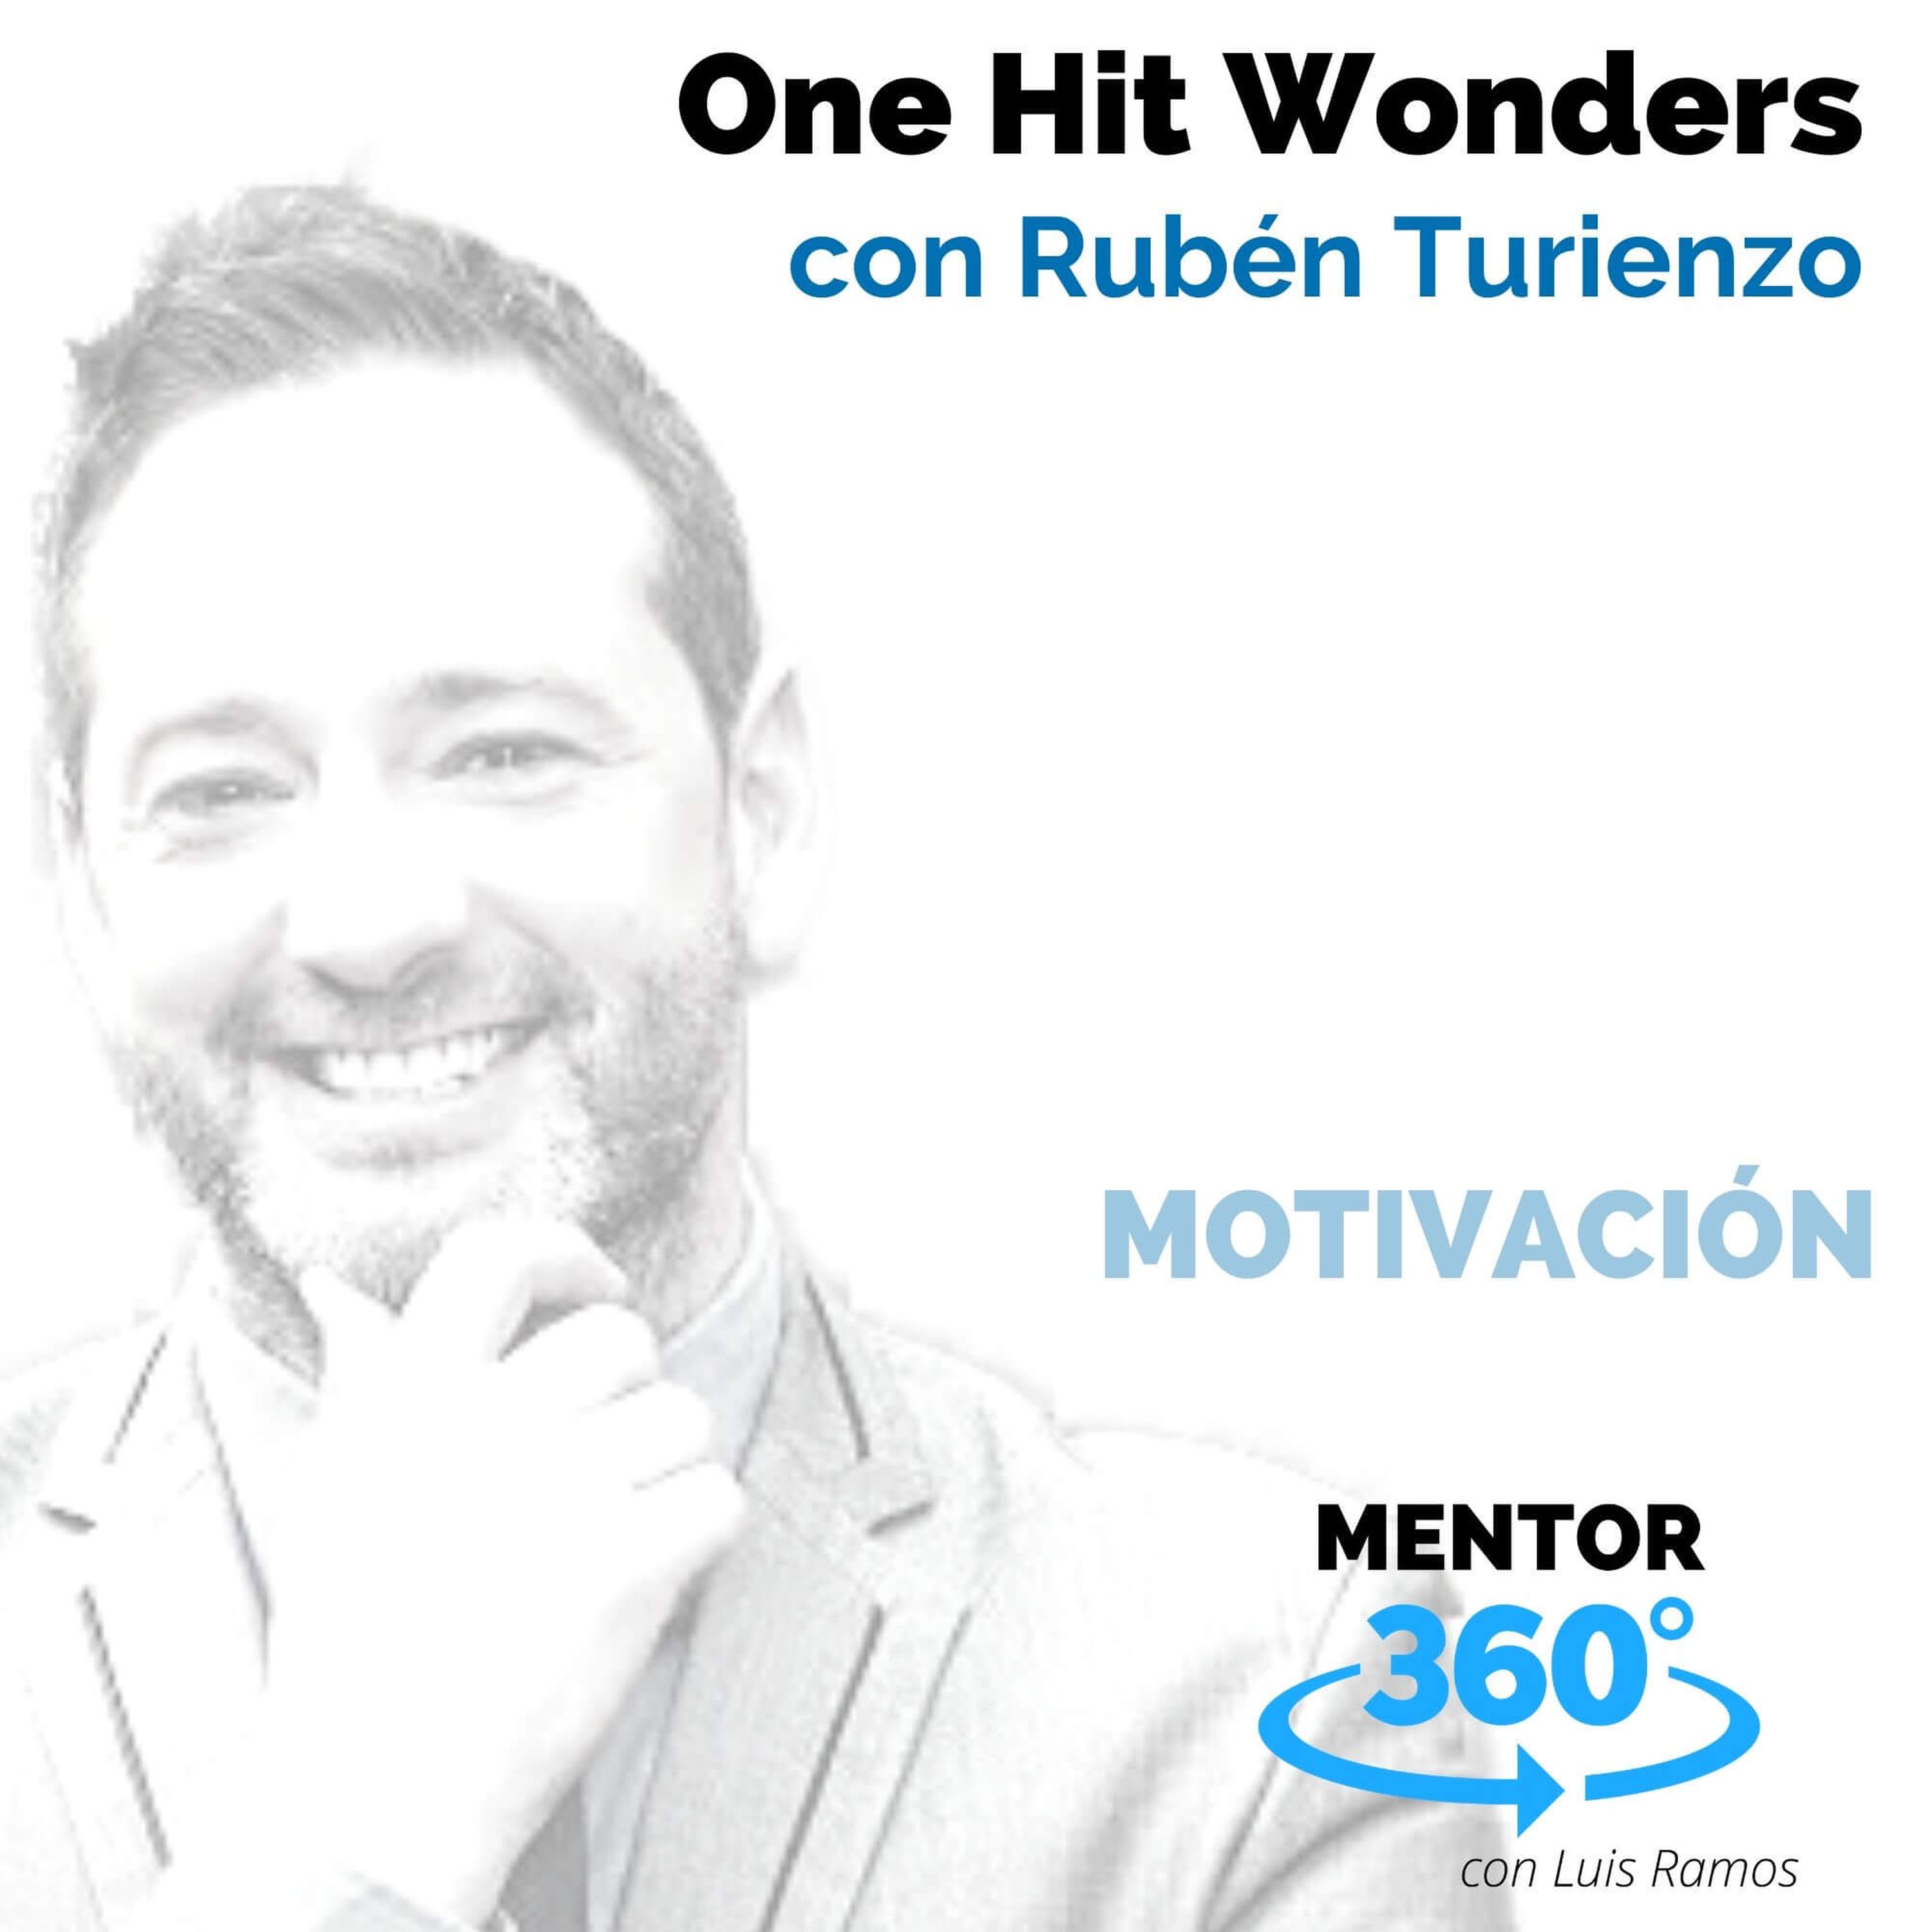 One Hit Wonders, con Rubén Turienzo - MOTIVACIÓN